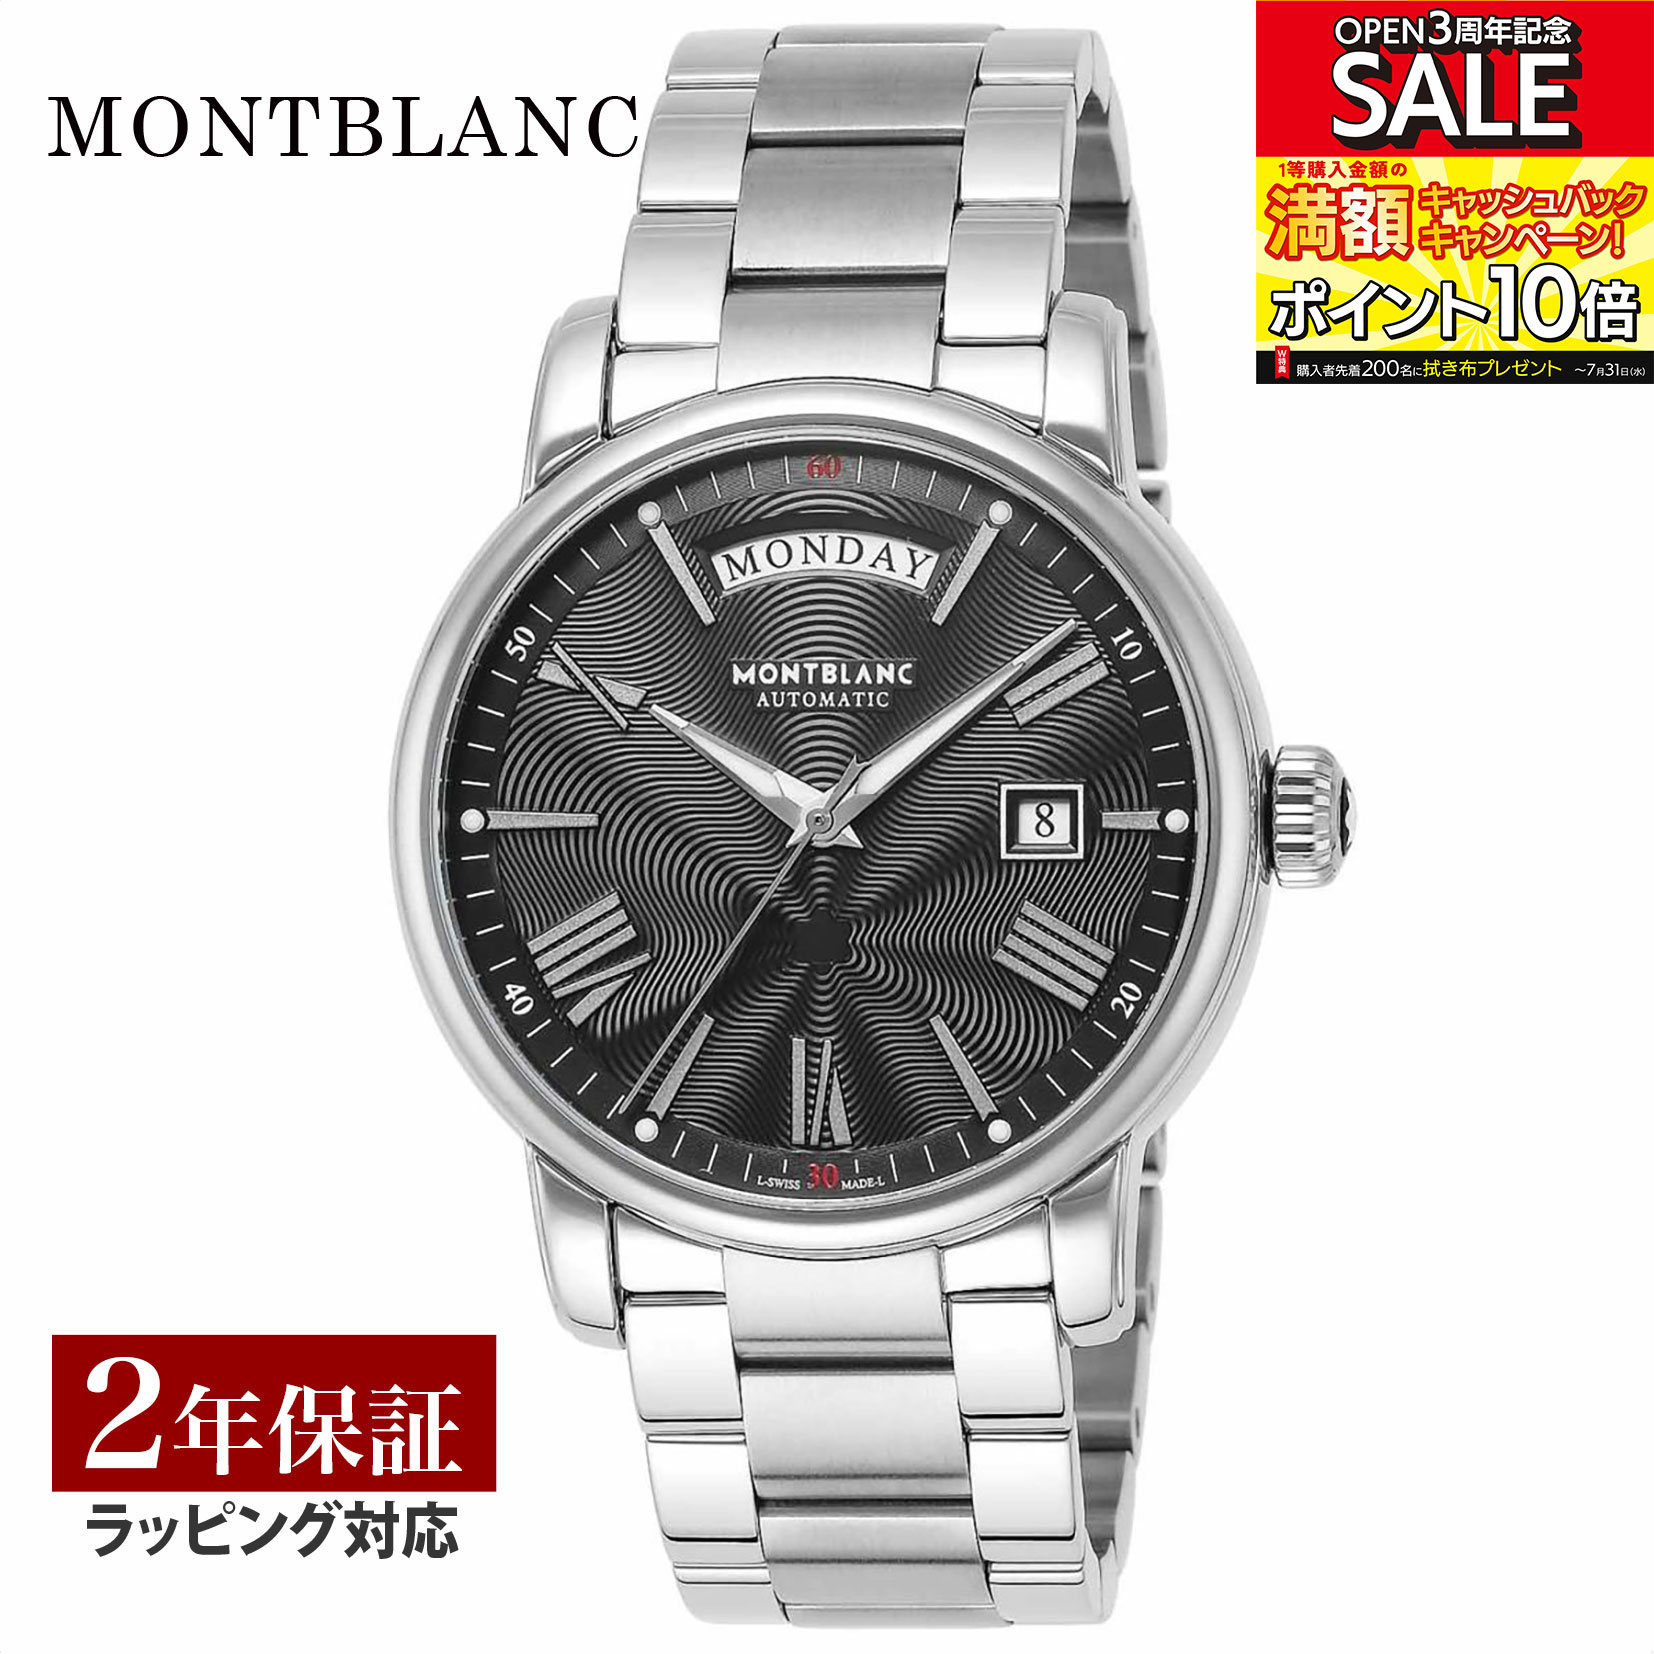 モンブラン ビジネス腕時計 メンズ モンブラン Montblanc メンズ 時計 4810 自動巻 ブラック 115937 時計 腕時計 高級腕時計 ブランド 【ローン金利無料】